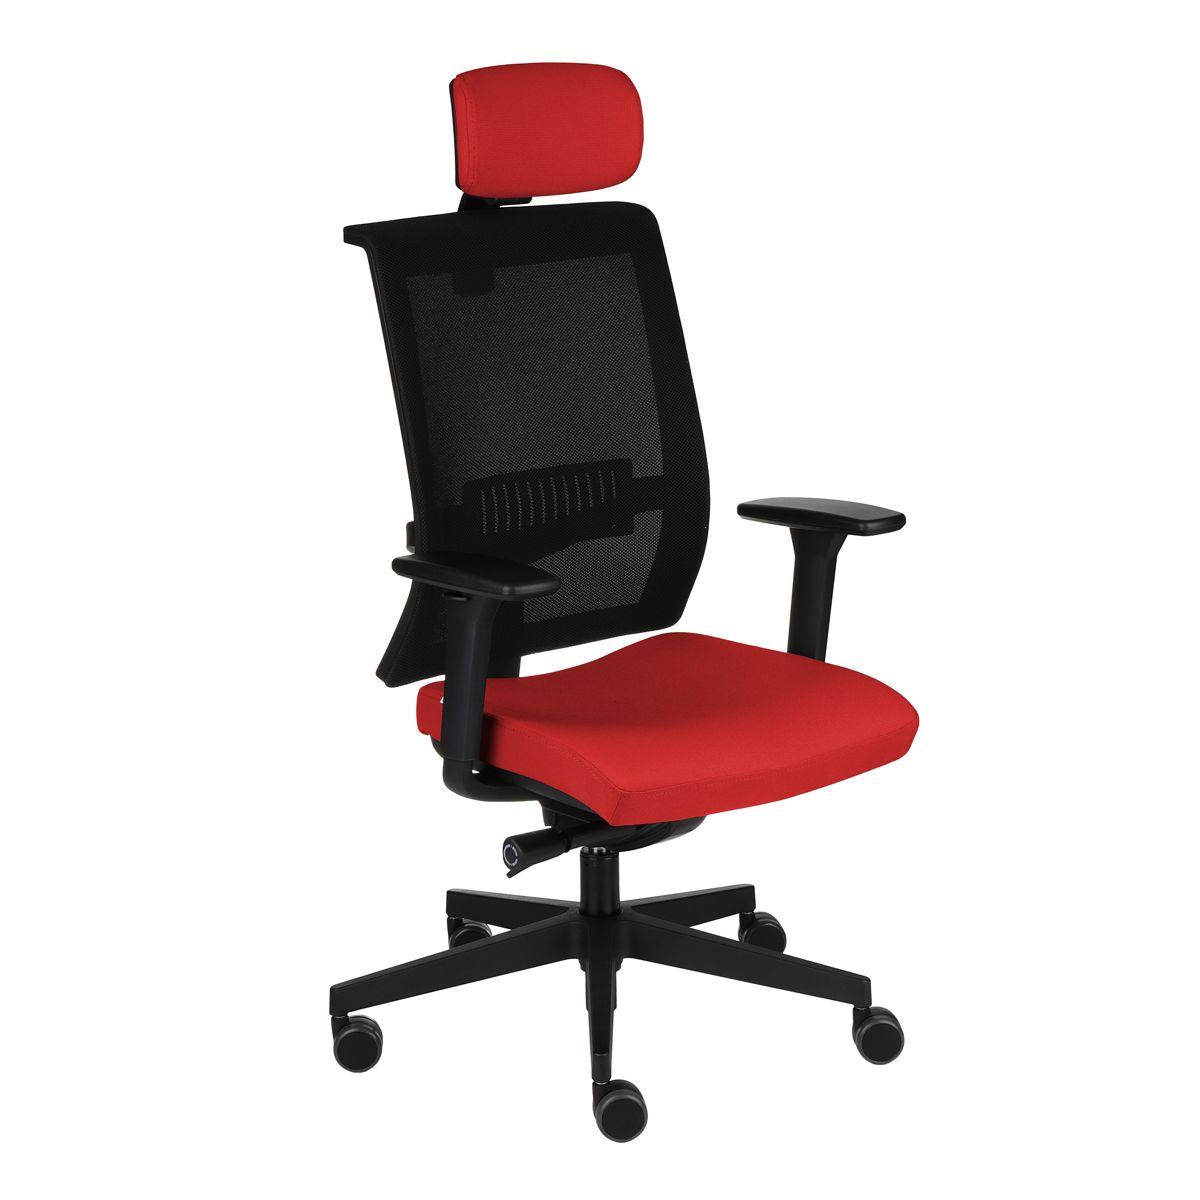 Kancelárska stolička s podrúčkami Libon BS HD - červená / čierna - nabbi.sk